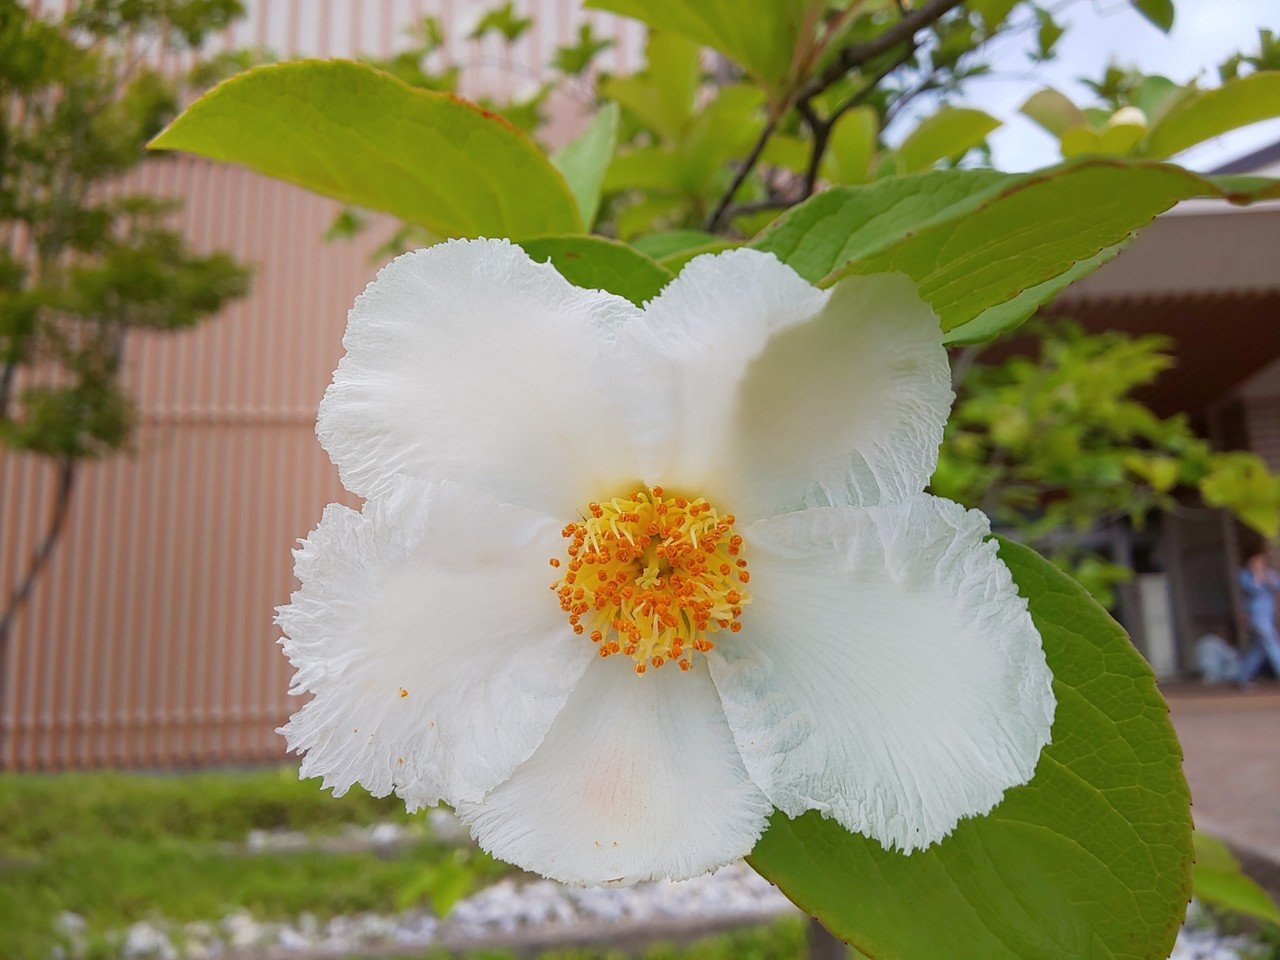 ナツツバキ 夏椿 が咲きました 沙羅双樹の花に似ていることから 沙羅樹 シャラノキ とも呼ばれているそうです 朝咲いて夕方には散ってしまう一日花 花言葉は はかない美しさ 愛らしさ 純白な清楚な花 Emiko Note